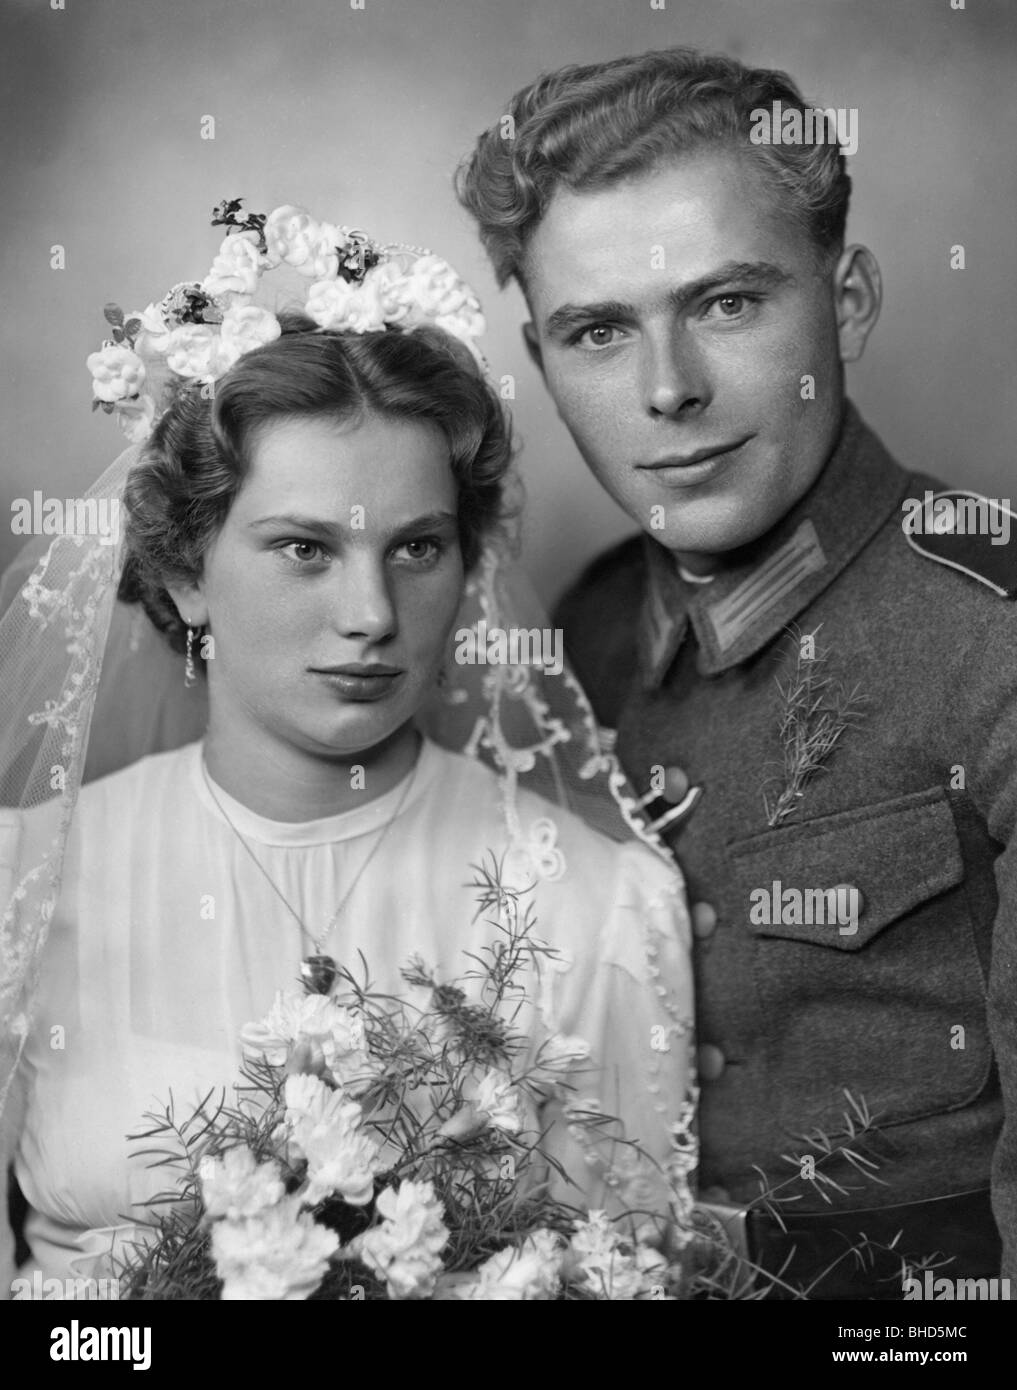 Menschen, Hochzeit, brautpaar, Frau im Hochzeitskleid und Mann in Uniform der Wehrmacht, ca. 1942, Stockfoto